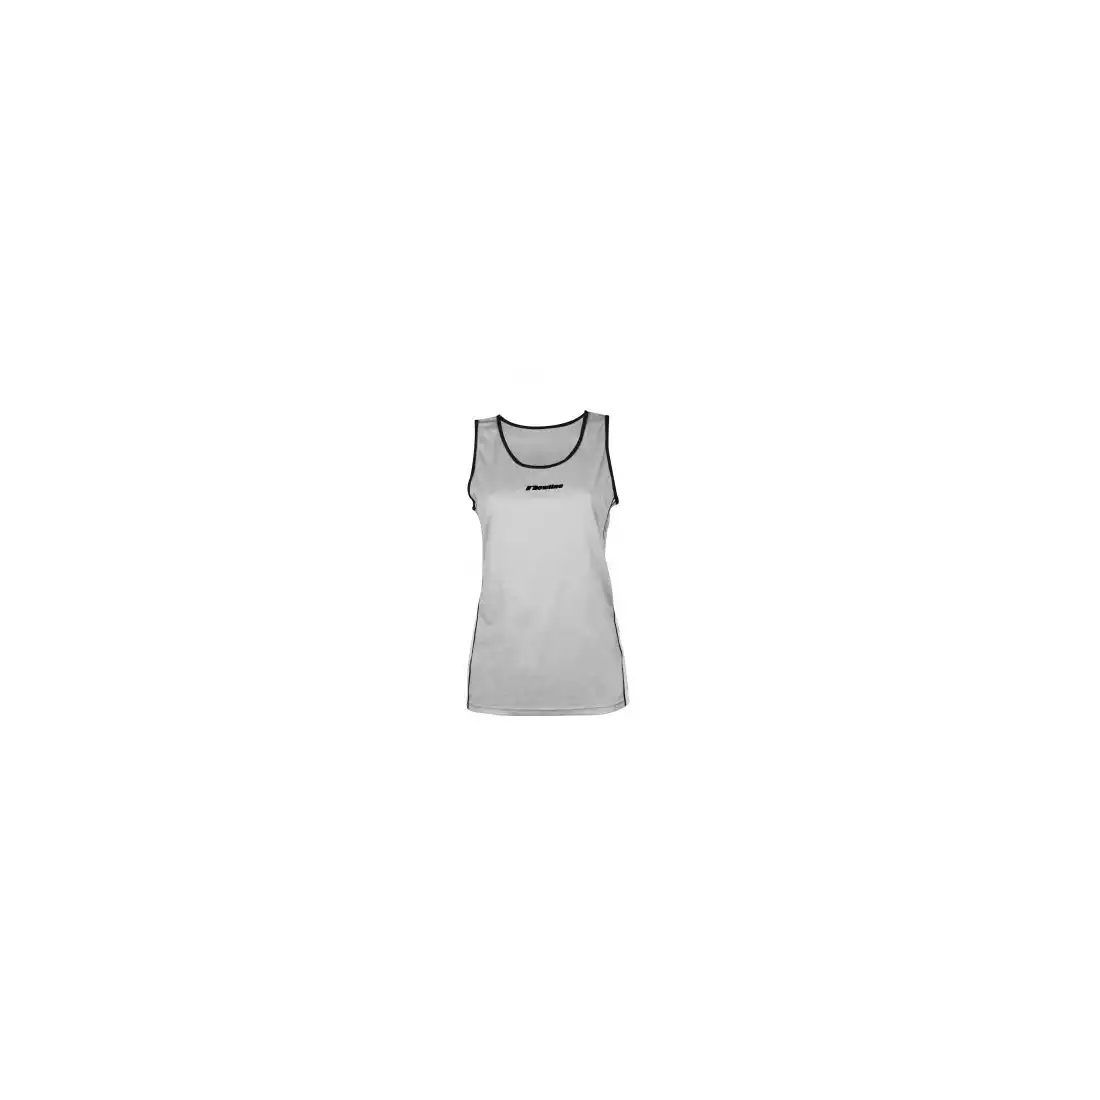 NEWLINE SINGLET - damska koszulka do biegania, bez rękawków 16671-02